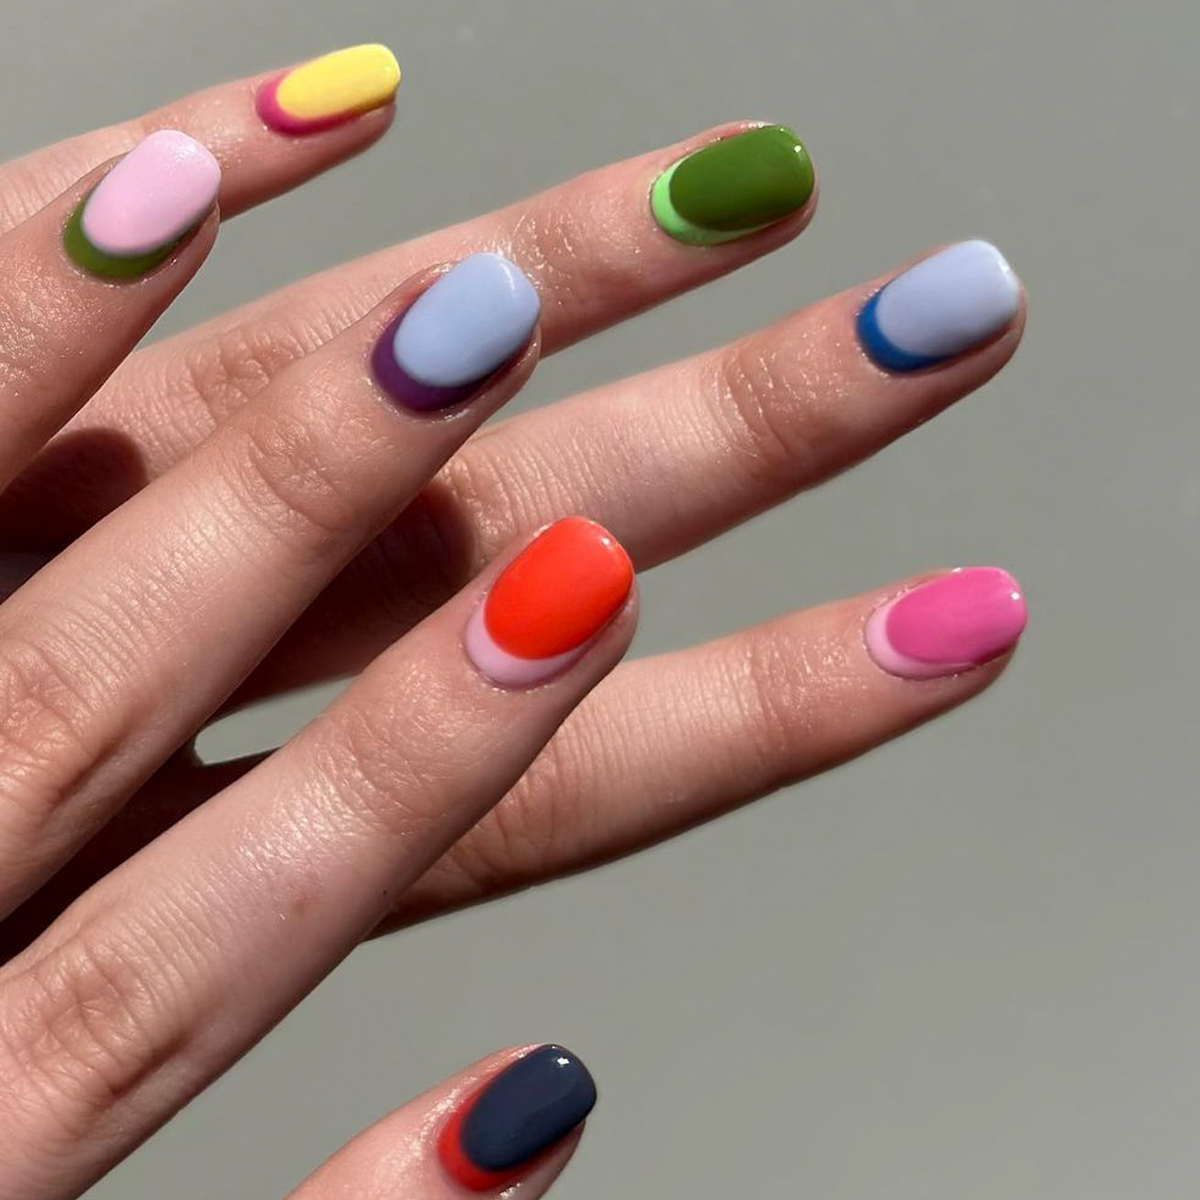 25 Gorgeous Rainbow Nail Designs To Rock This Summer - Women Fashion  Lifestyle Blog Shinecoco.com | Unhas coloridas, Unhas multicoloridas, Unhas  bonitas